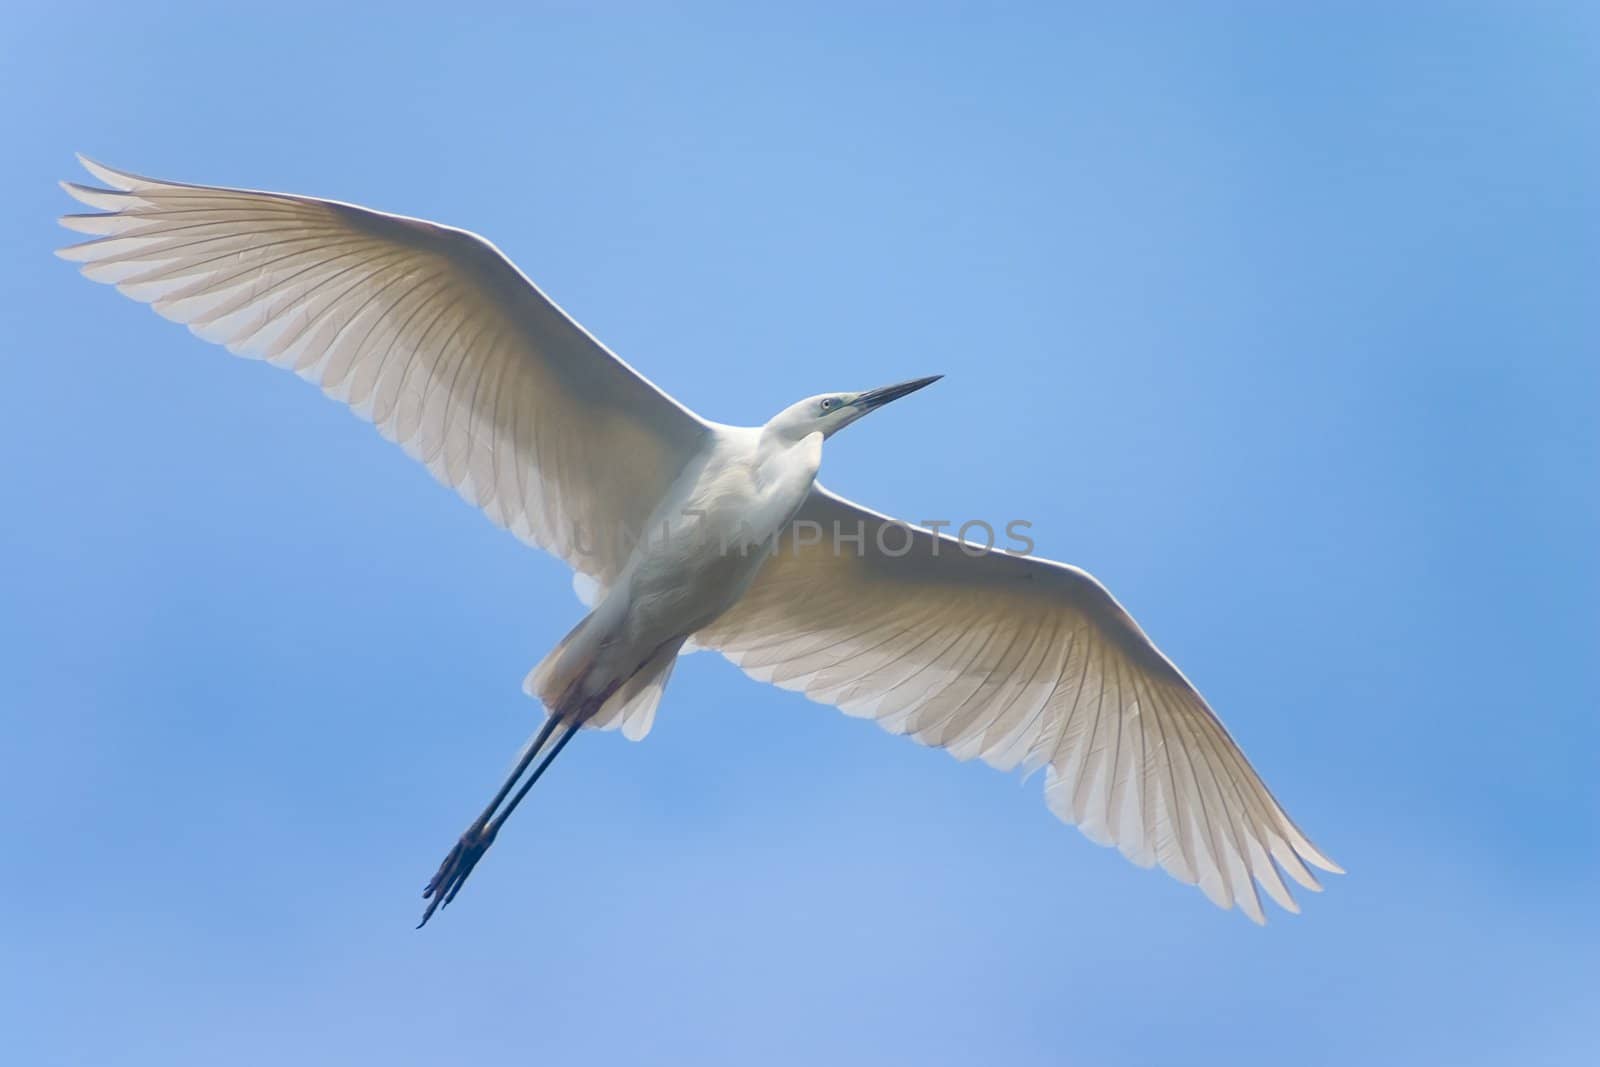 soaring white heron bird in blue sky